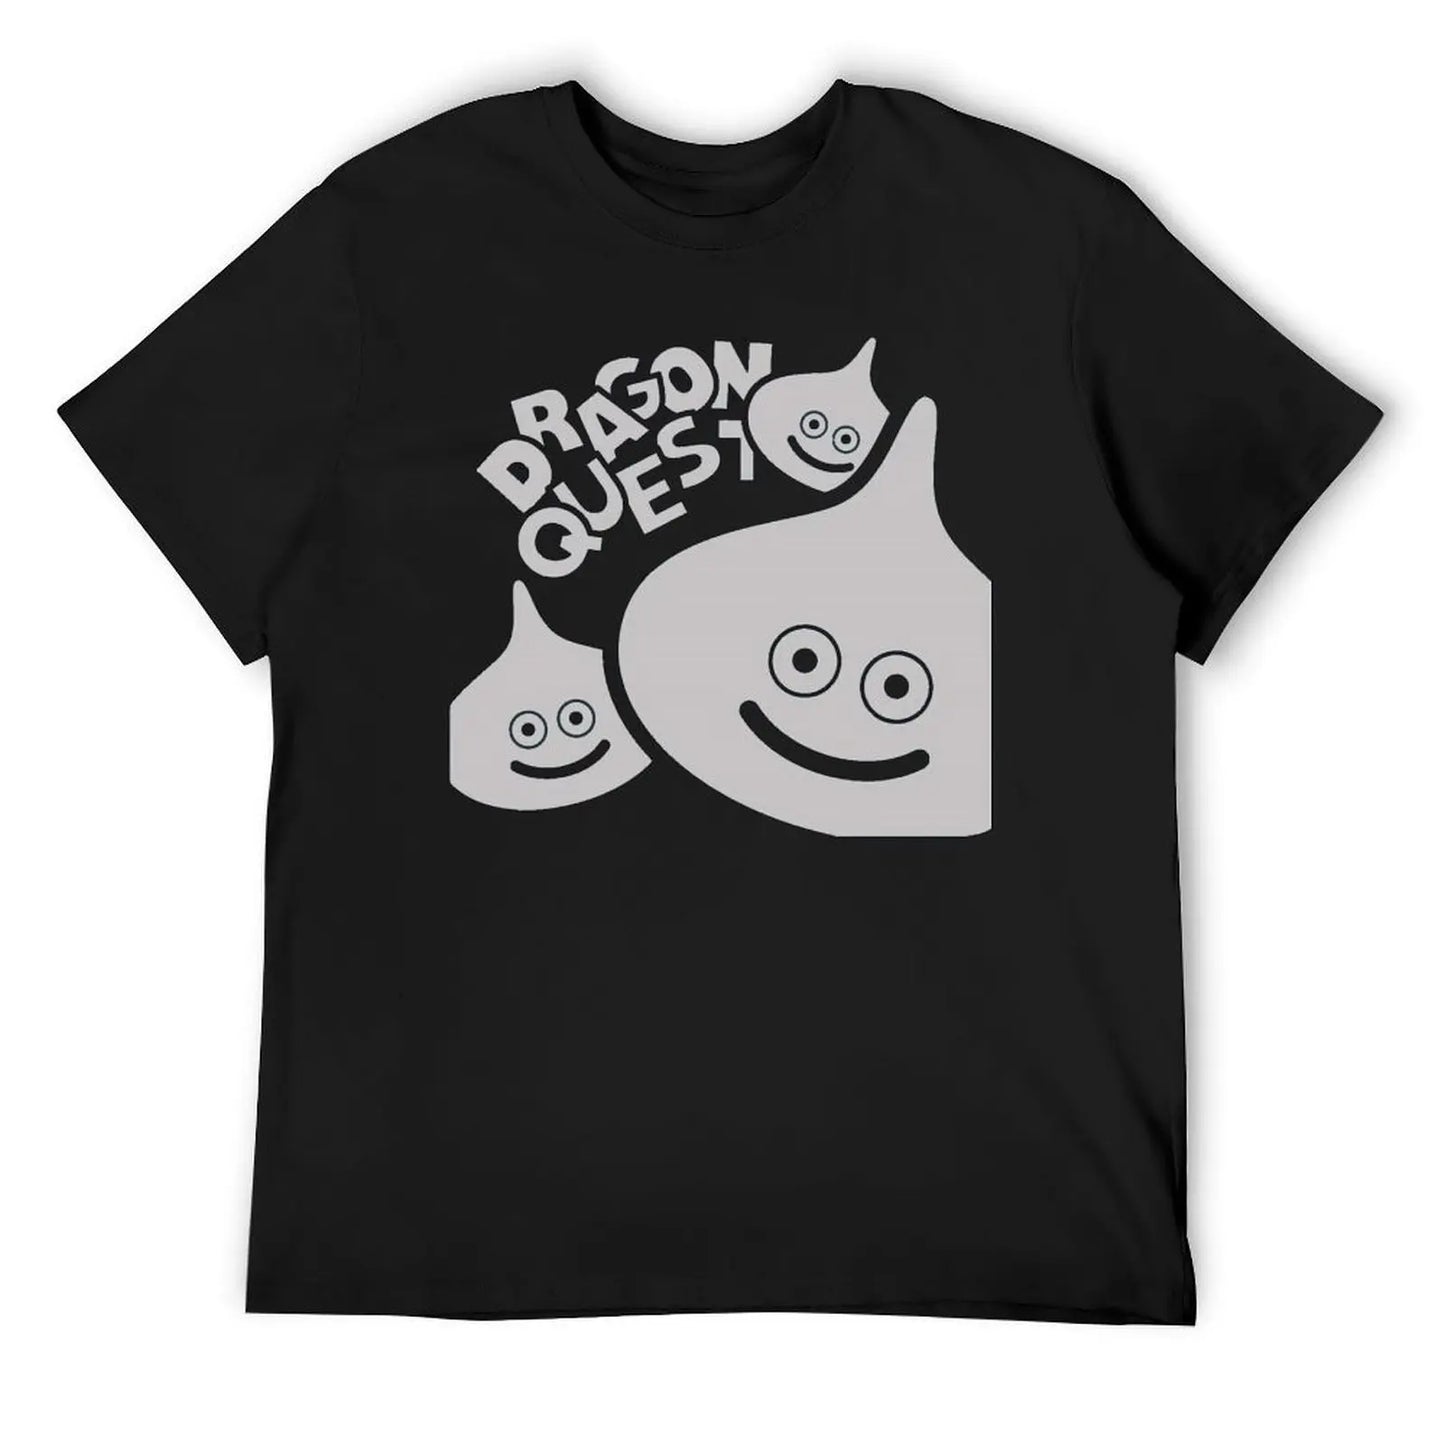 Frais Dragon Quest Slime ドラゴンクエスト スライム T-shirt Mouvement T-shirts Offre Spéciale Drôle Nouveauté Loisirs Taille Européenne